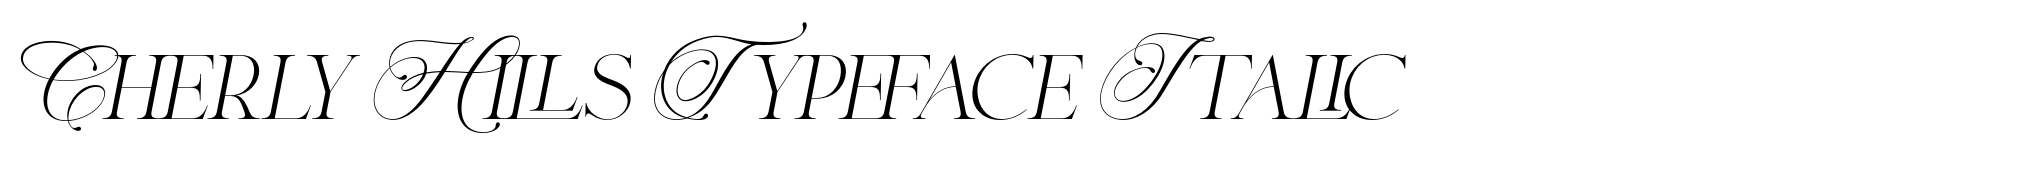 Cherly Hills Typeface Italic image